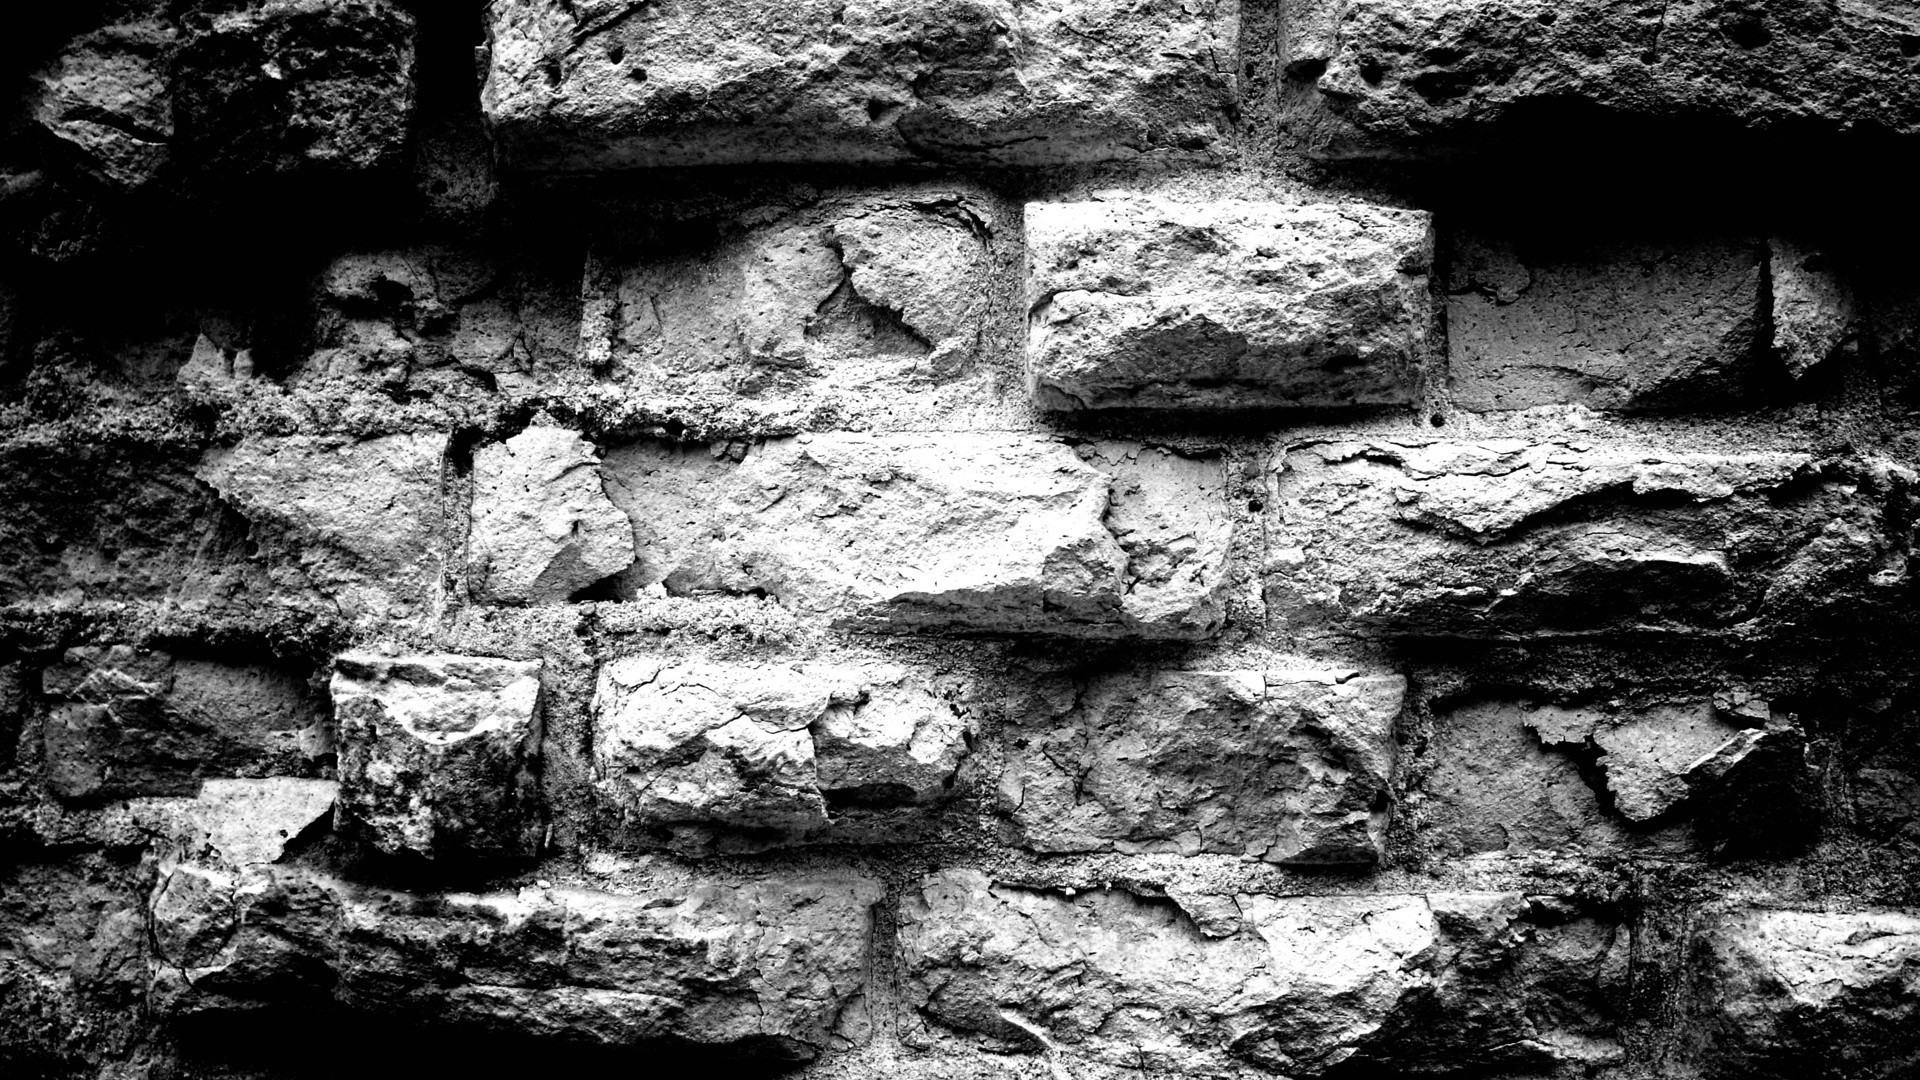 камень стены рабочего стола старый грубо текстура ткань рок шаблон бетон аннотация строительство грязные выражение поверхность цемент кирпич кладка фон